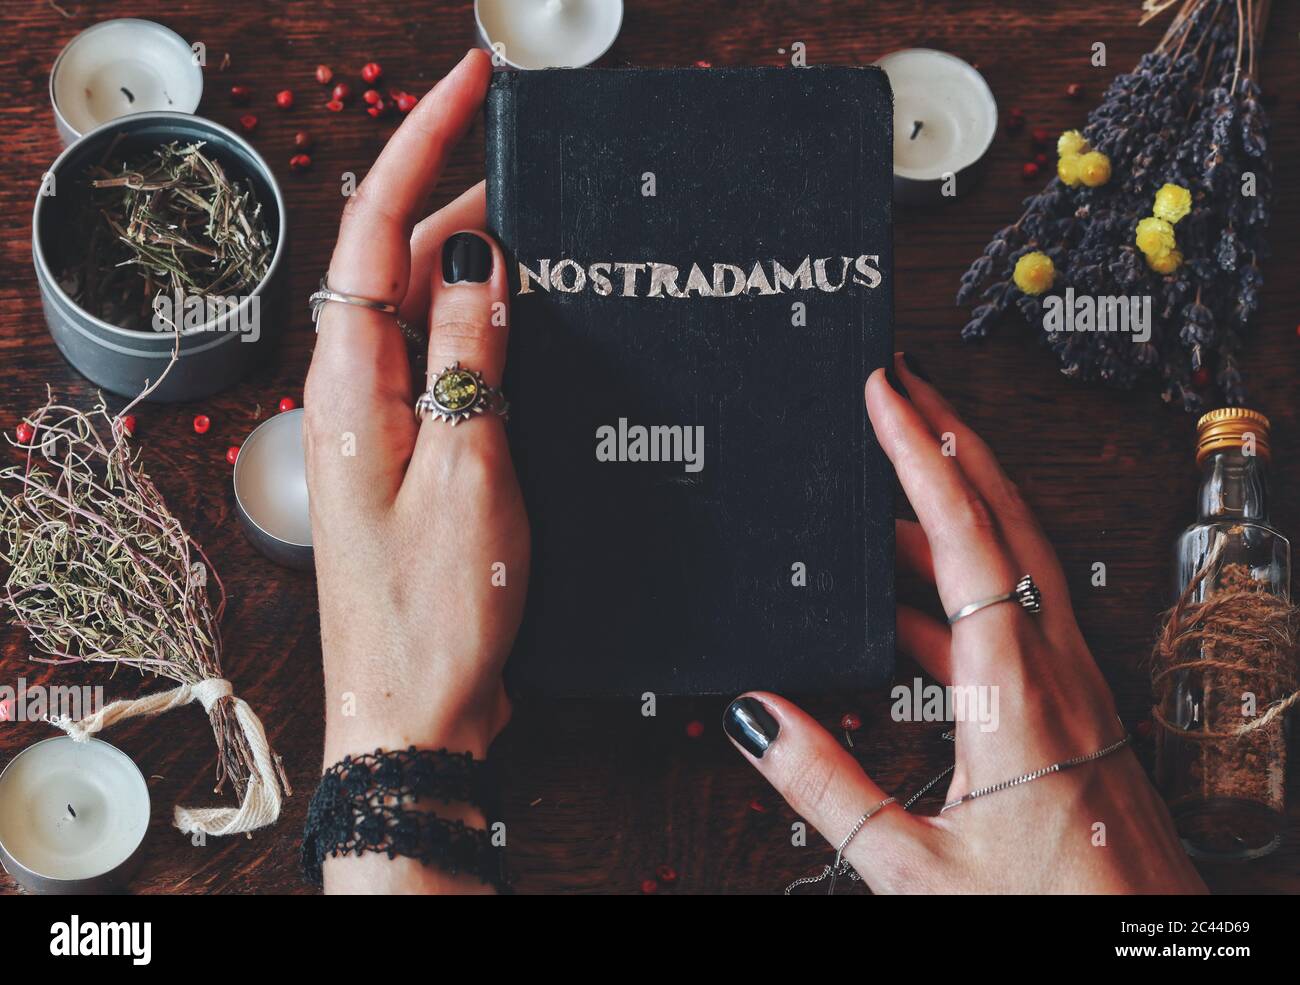 Wiccan strega tenendo a mano libro fatto con la parola di lamina d'argento Nostradamus scritto su di esso, circa predire il futuro e profezie antiche nelle sue mani Foto Stock